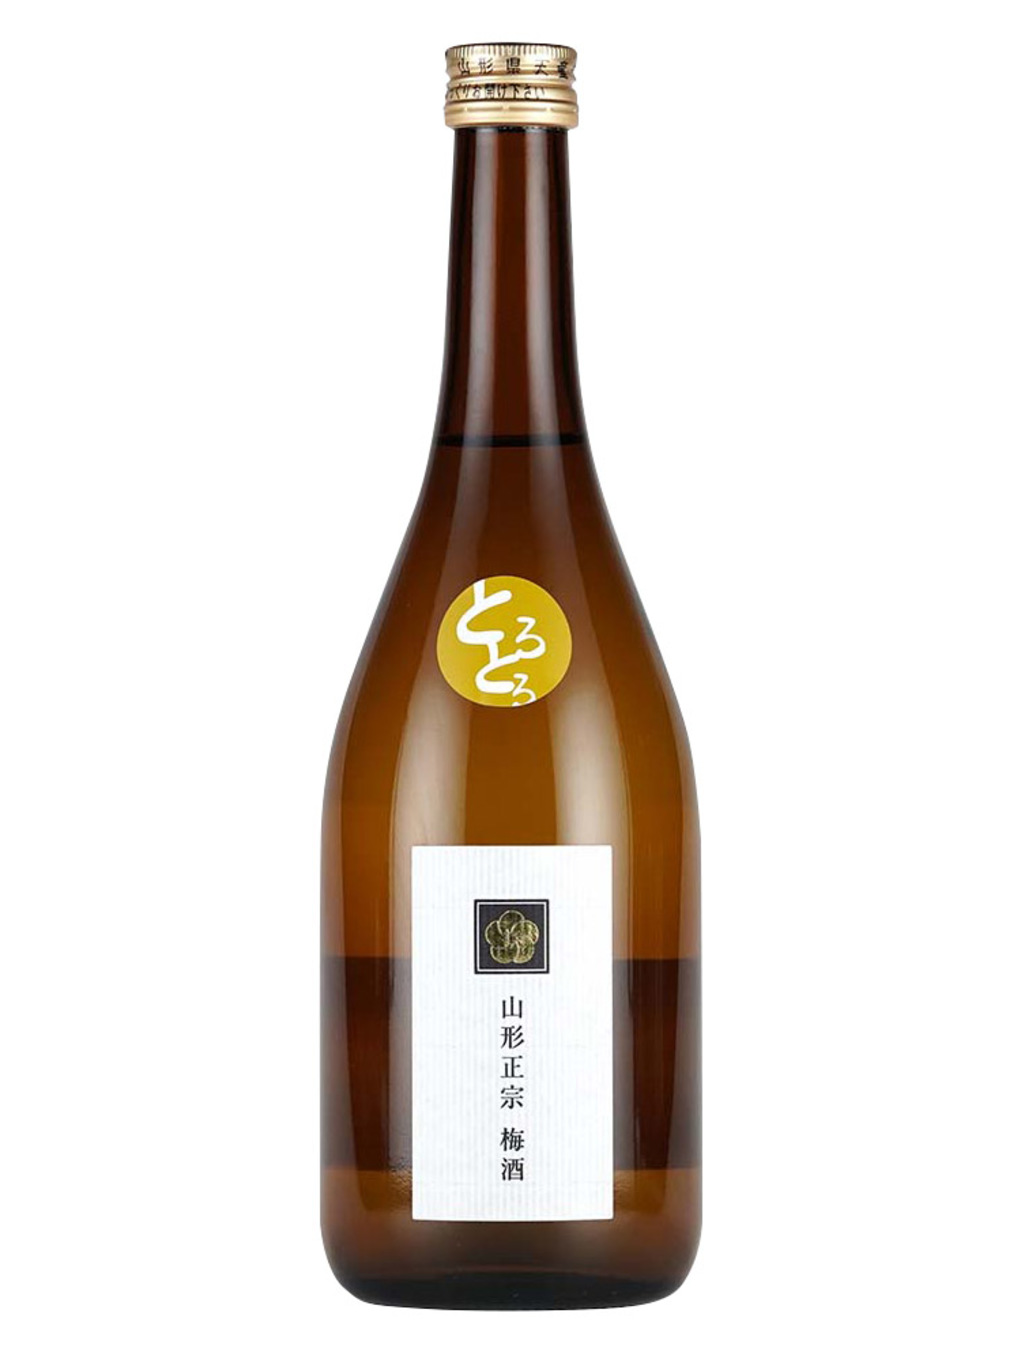 山形正宗 濃郁梅酒 720/1800ml